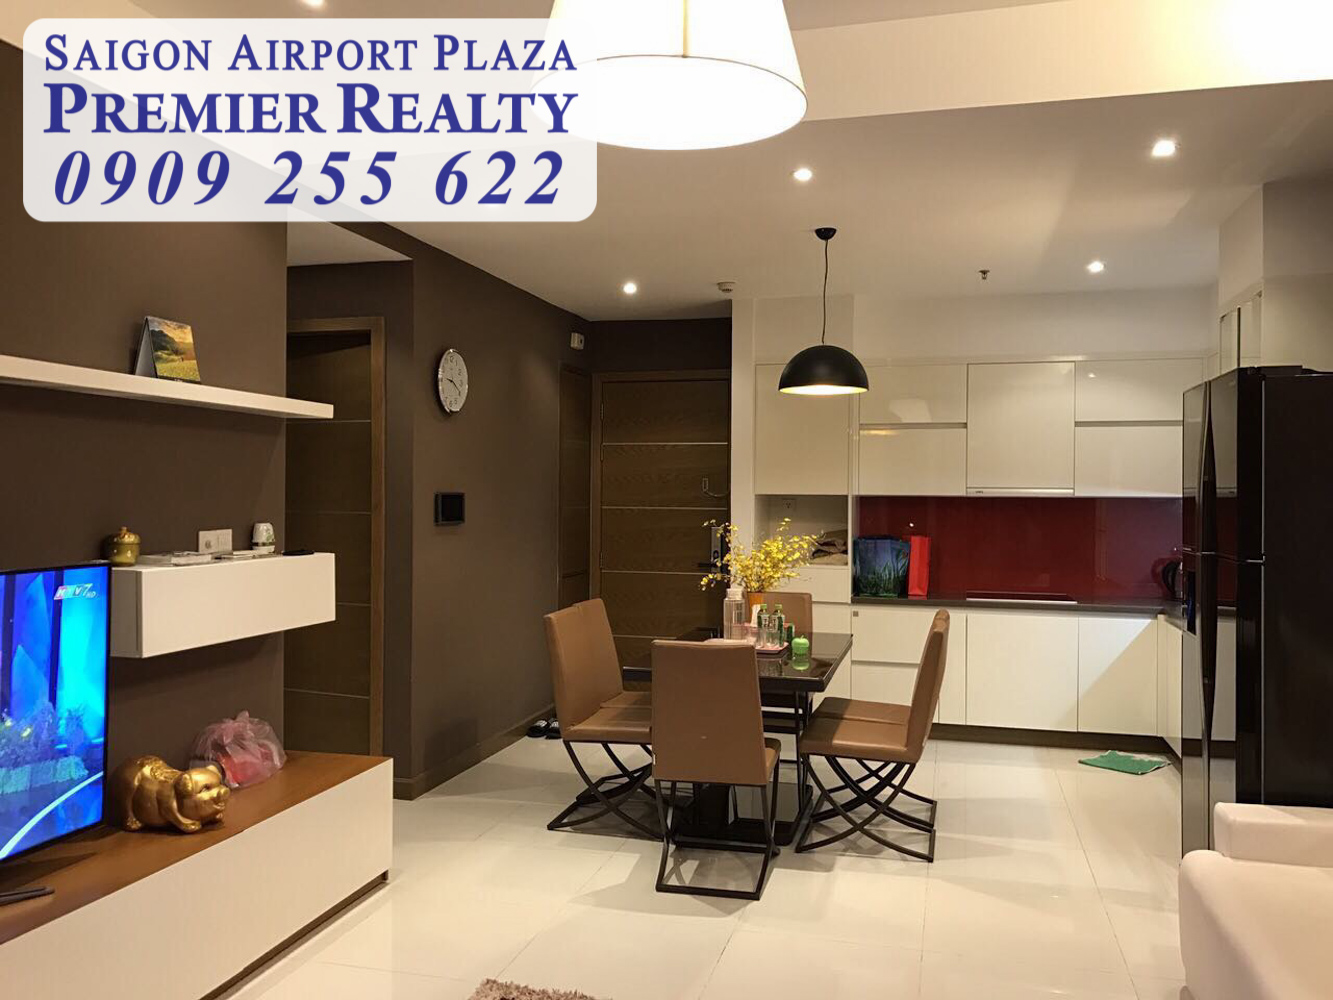 Hotline Pkd 0909 255 622 - Saigon Airport Plaza, Cho Thuê Gấp Căn hộ 3pn - 110m2, Tầng Trung, View sân vườn